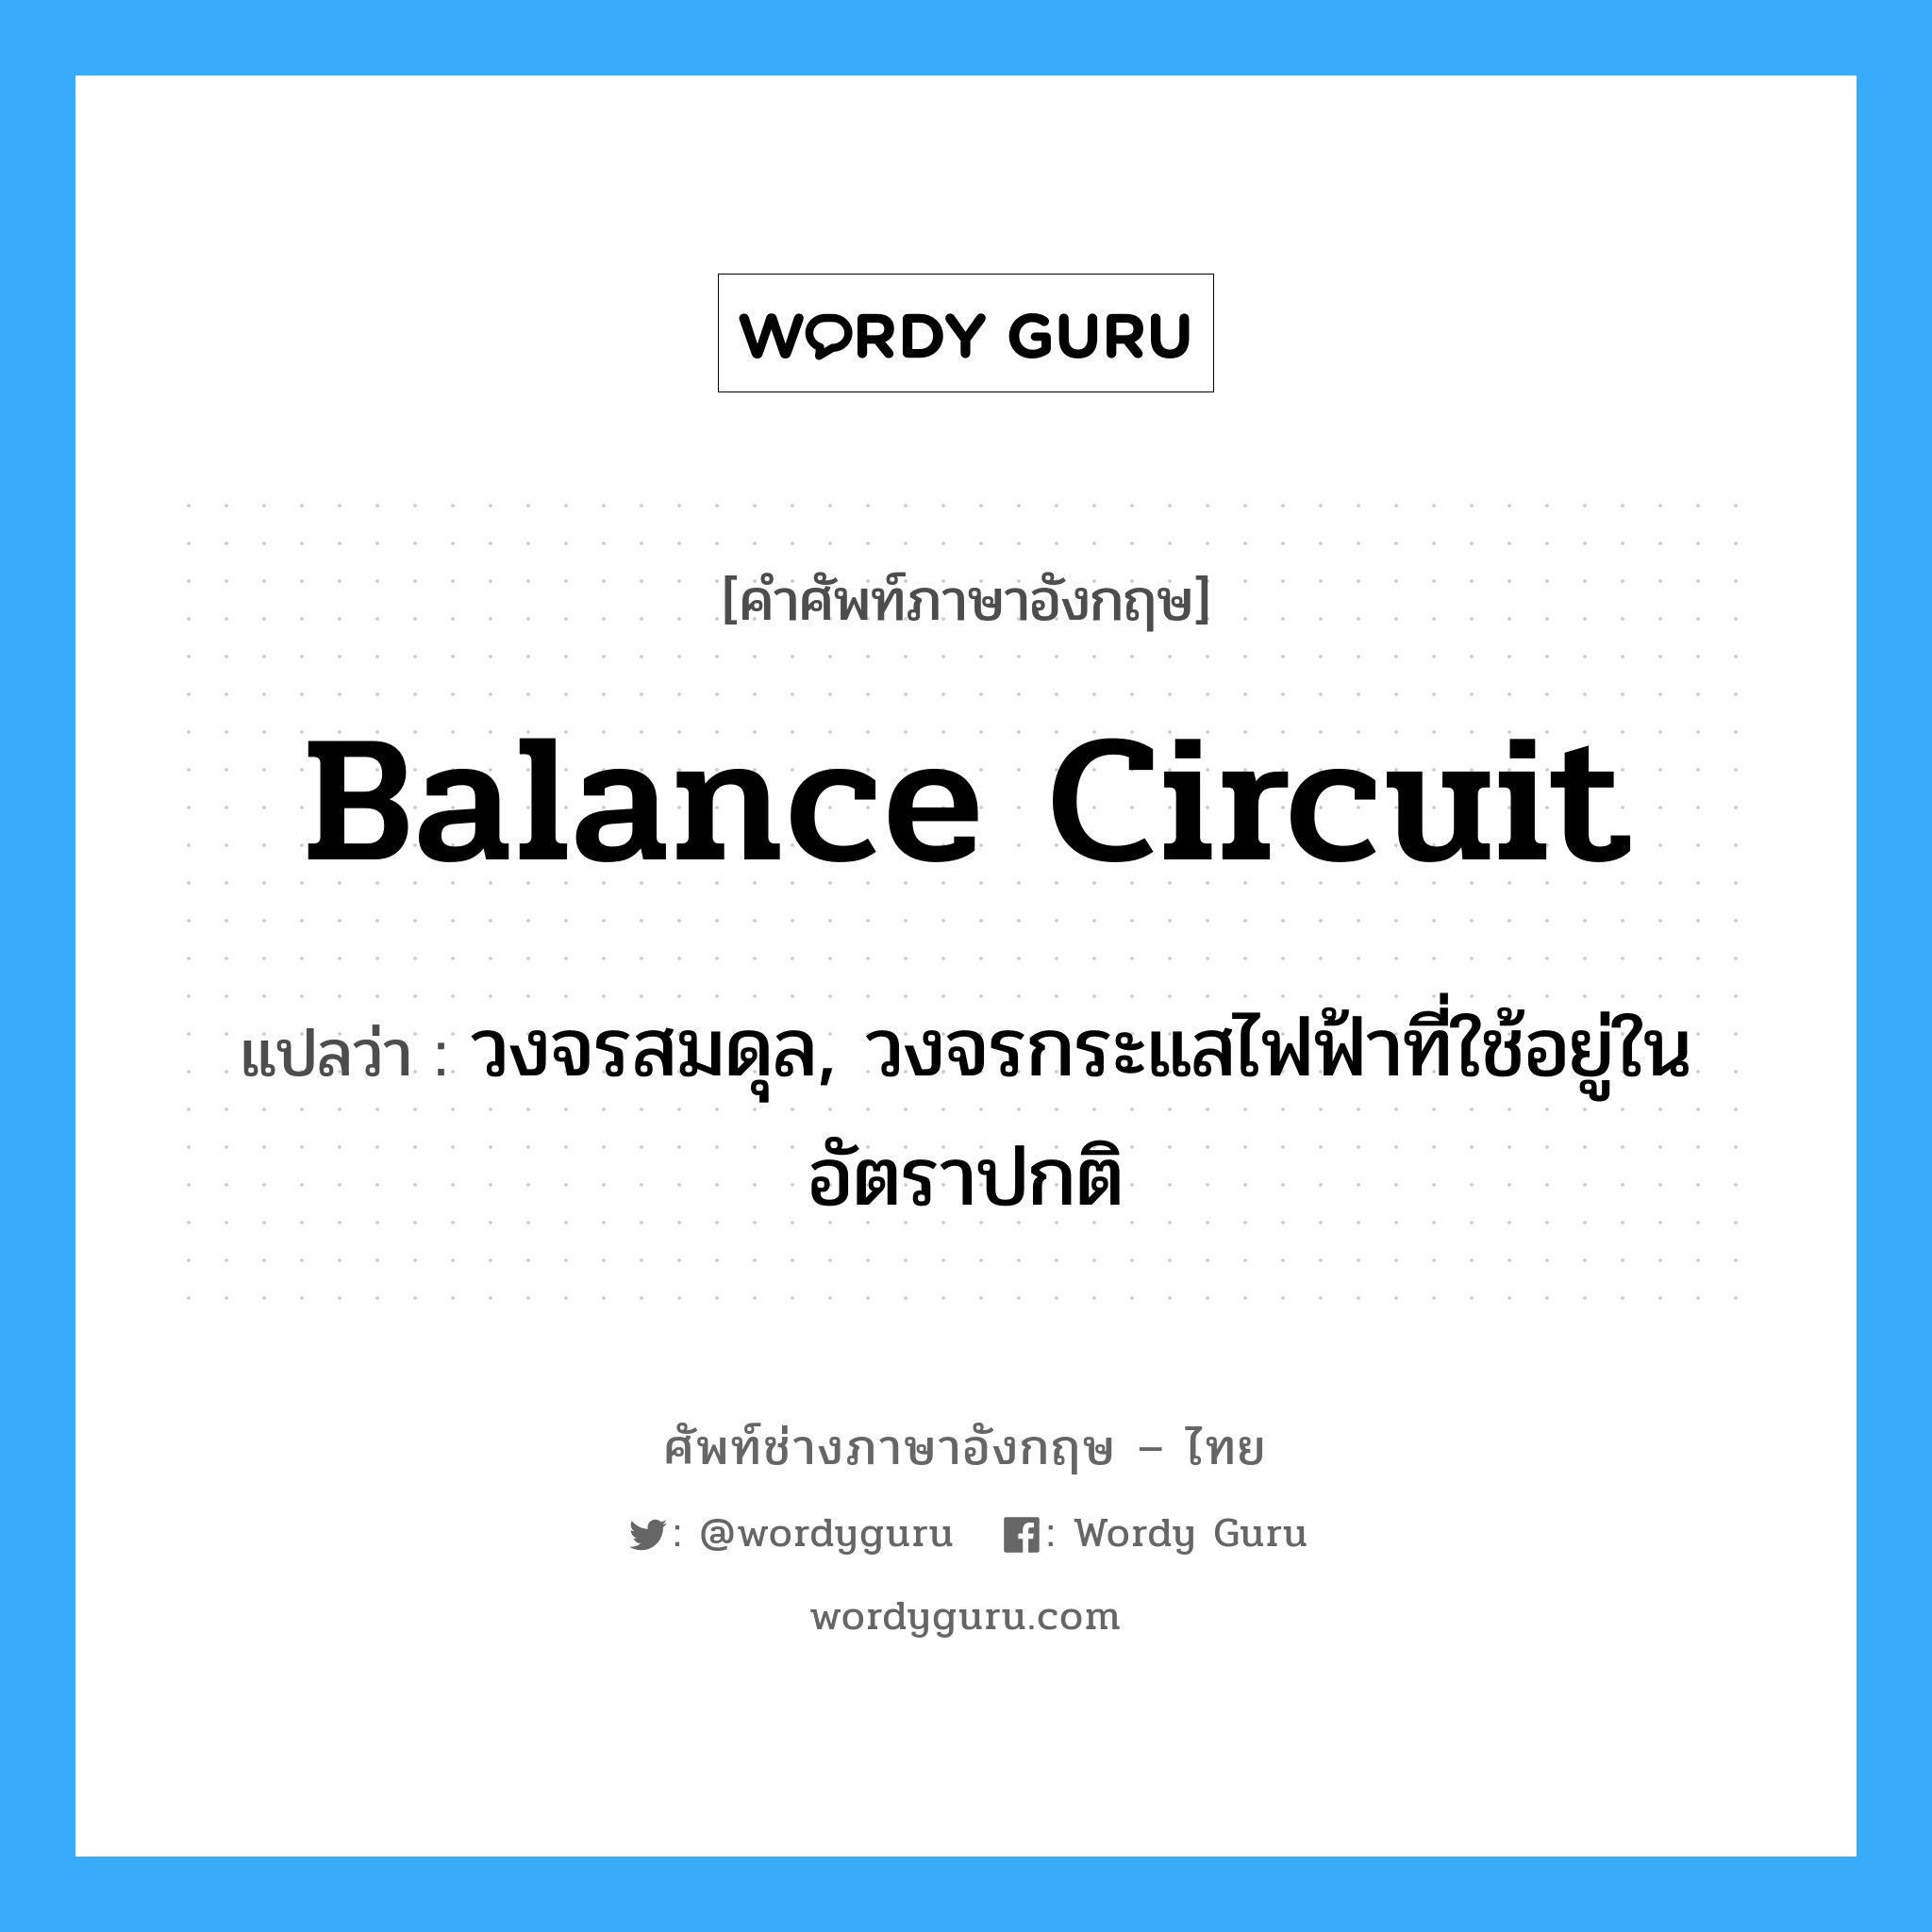 balance circuit แปลว่า?, คำศัพท์ช่างภาษาอังกฤษ - ไทย balance circuit คำศัพท์ภาษาอังกฤษ balance circuit แปลว่า วงจรสมดุล, วงจรกระแสไฟฟ้าที่ใช้อยู่ในอัตราปกติ